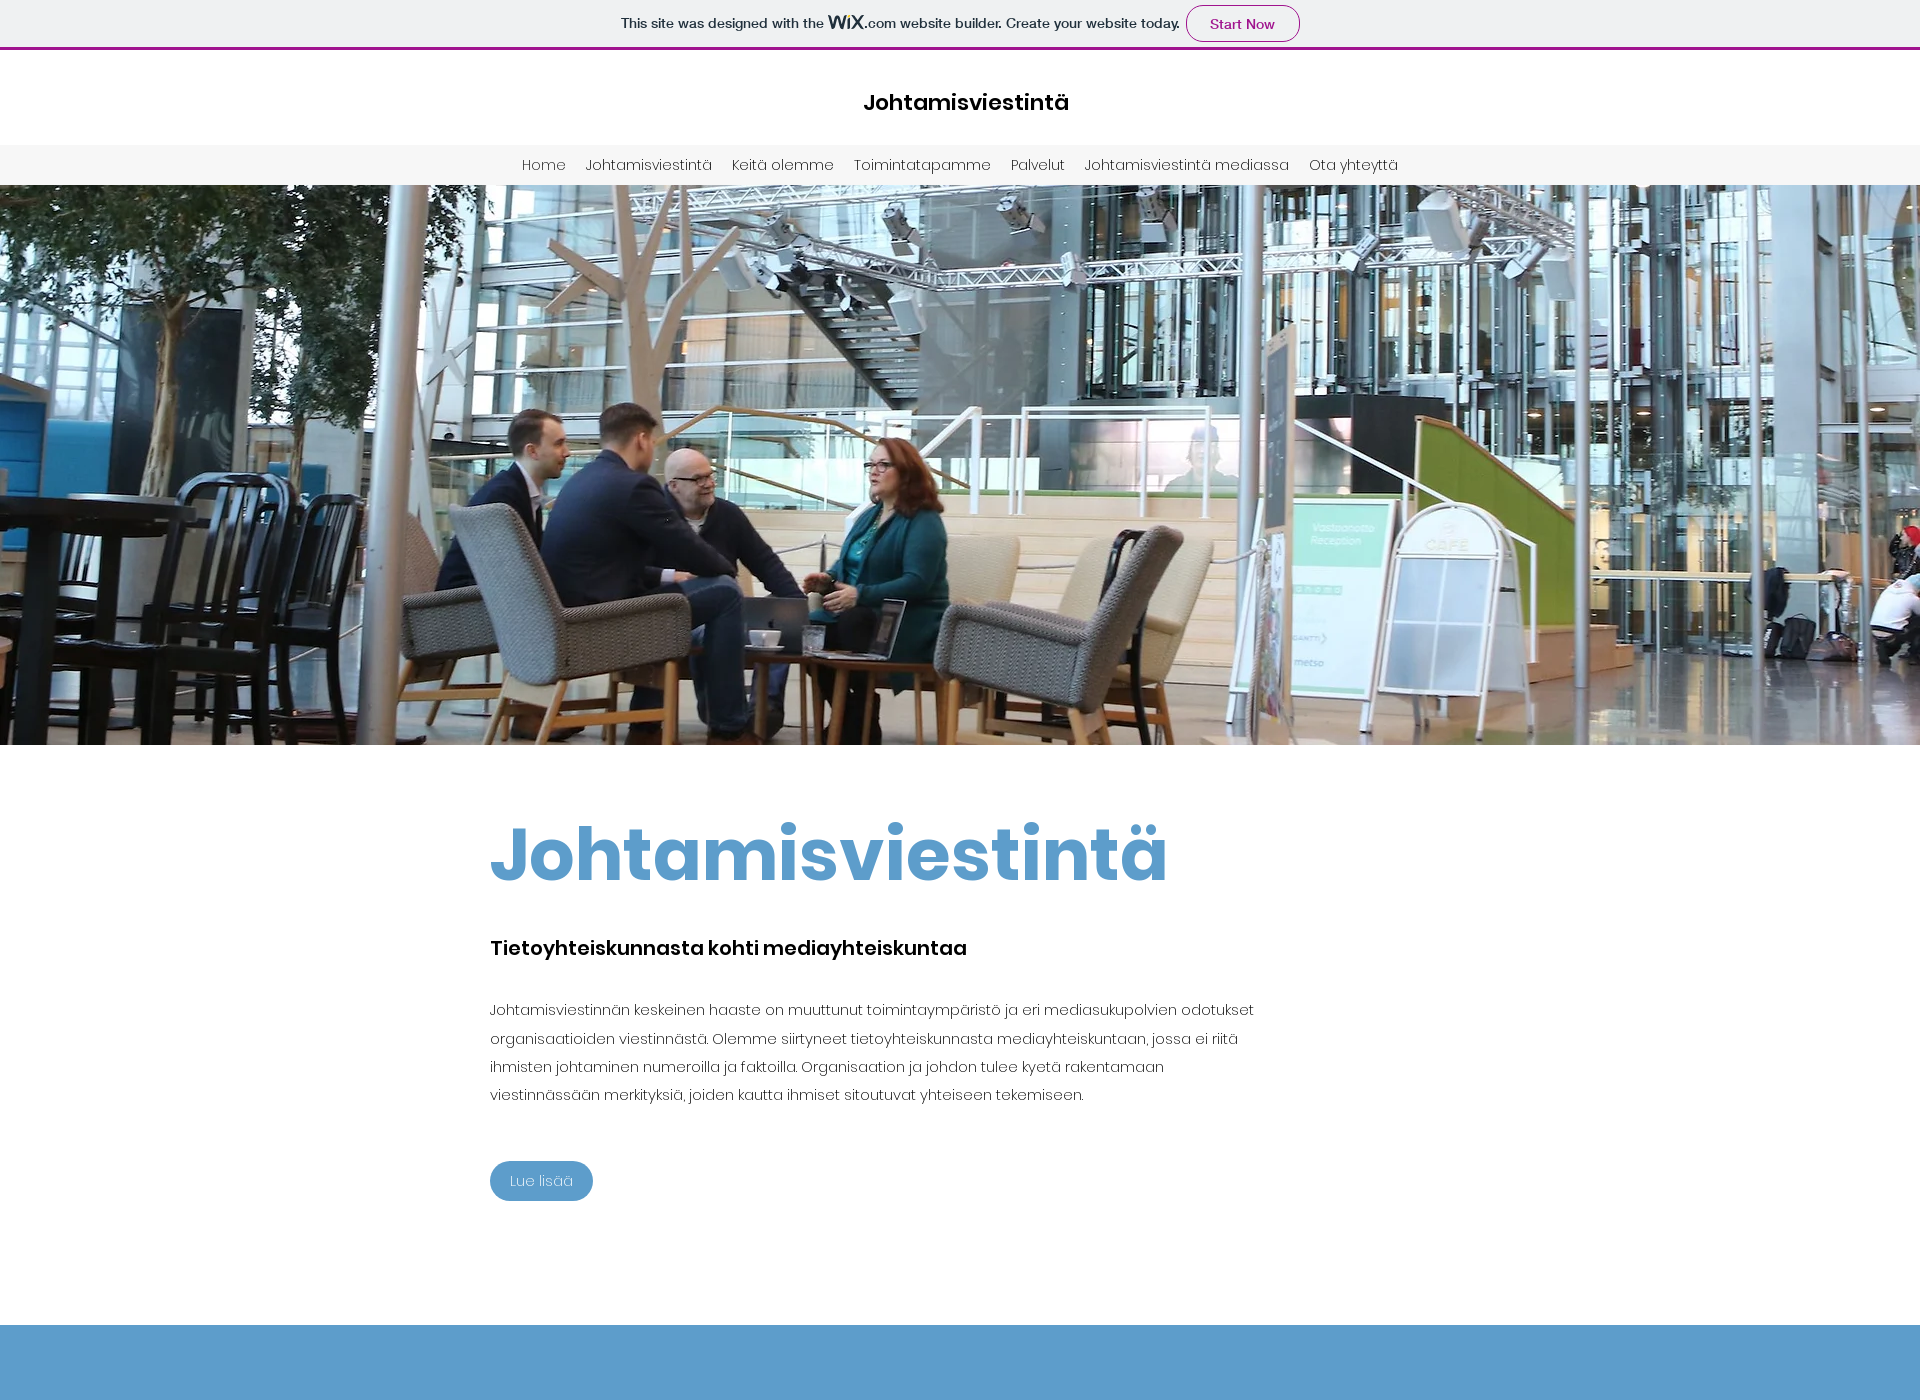 Näyttökuva johtamisviestinta.fi